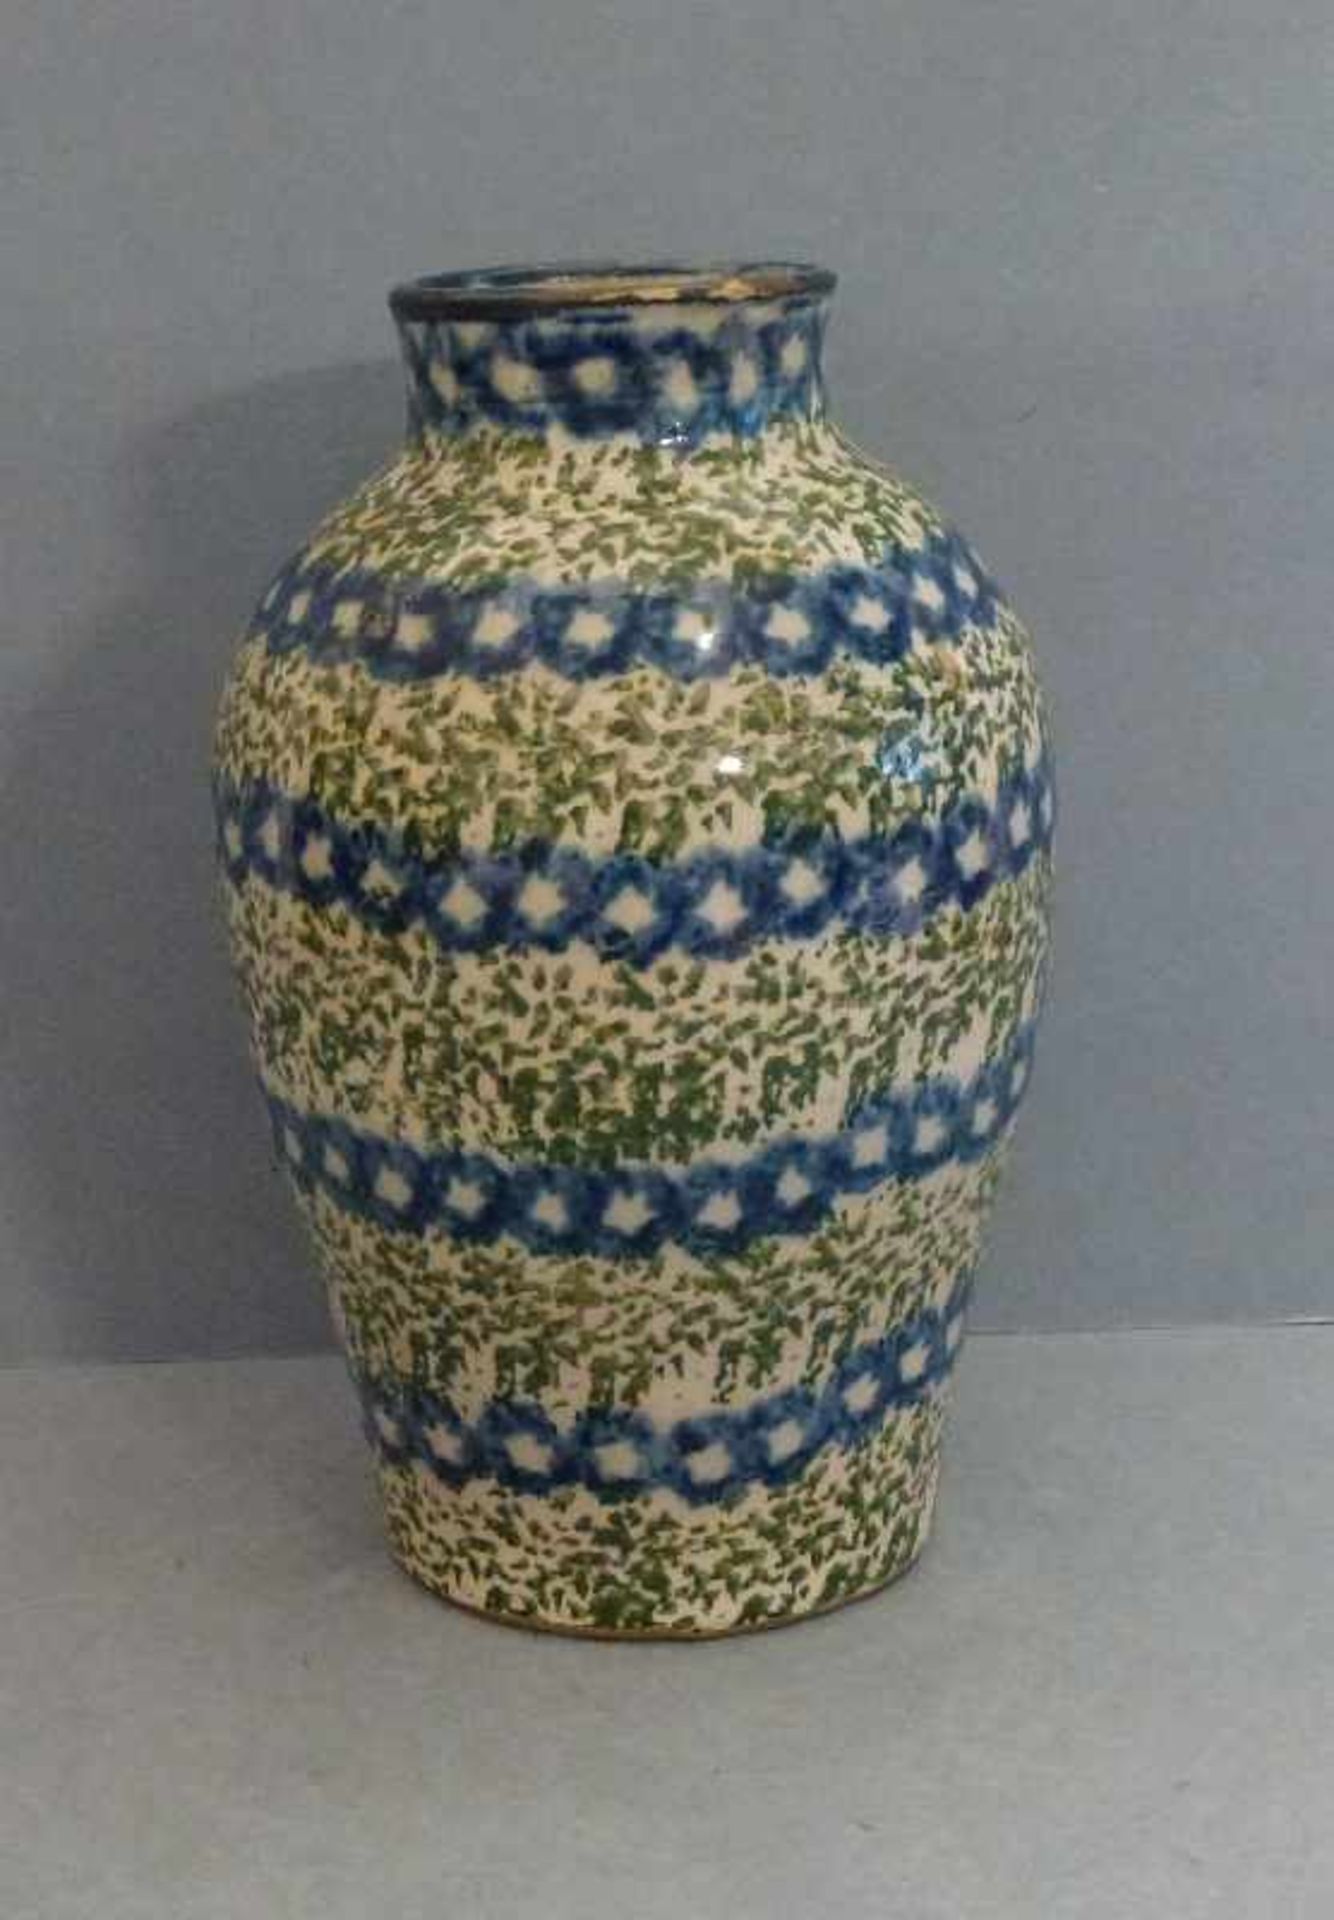 Vase, Bunzlau 1.V. 20.Jh. ovoid, zylind. Kragen, blaue Punktreihen in grünen Tupfen,Risse, Abplatzer